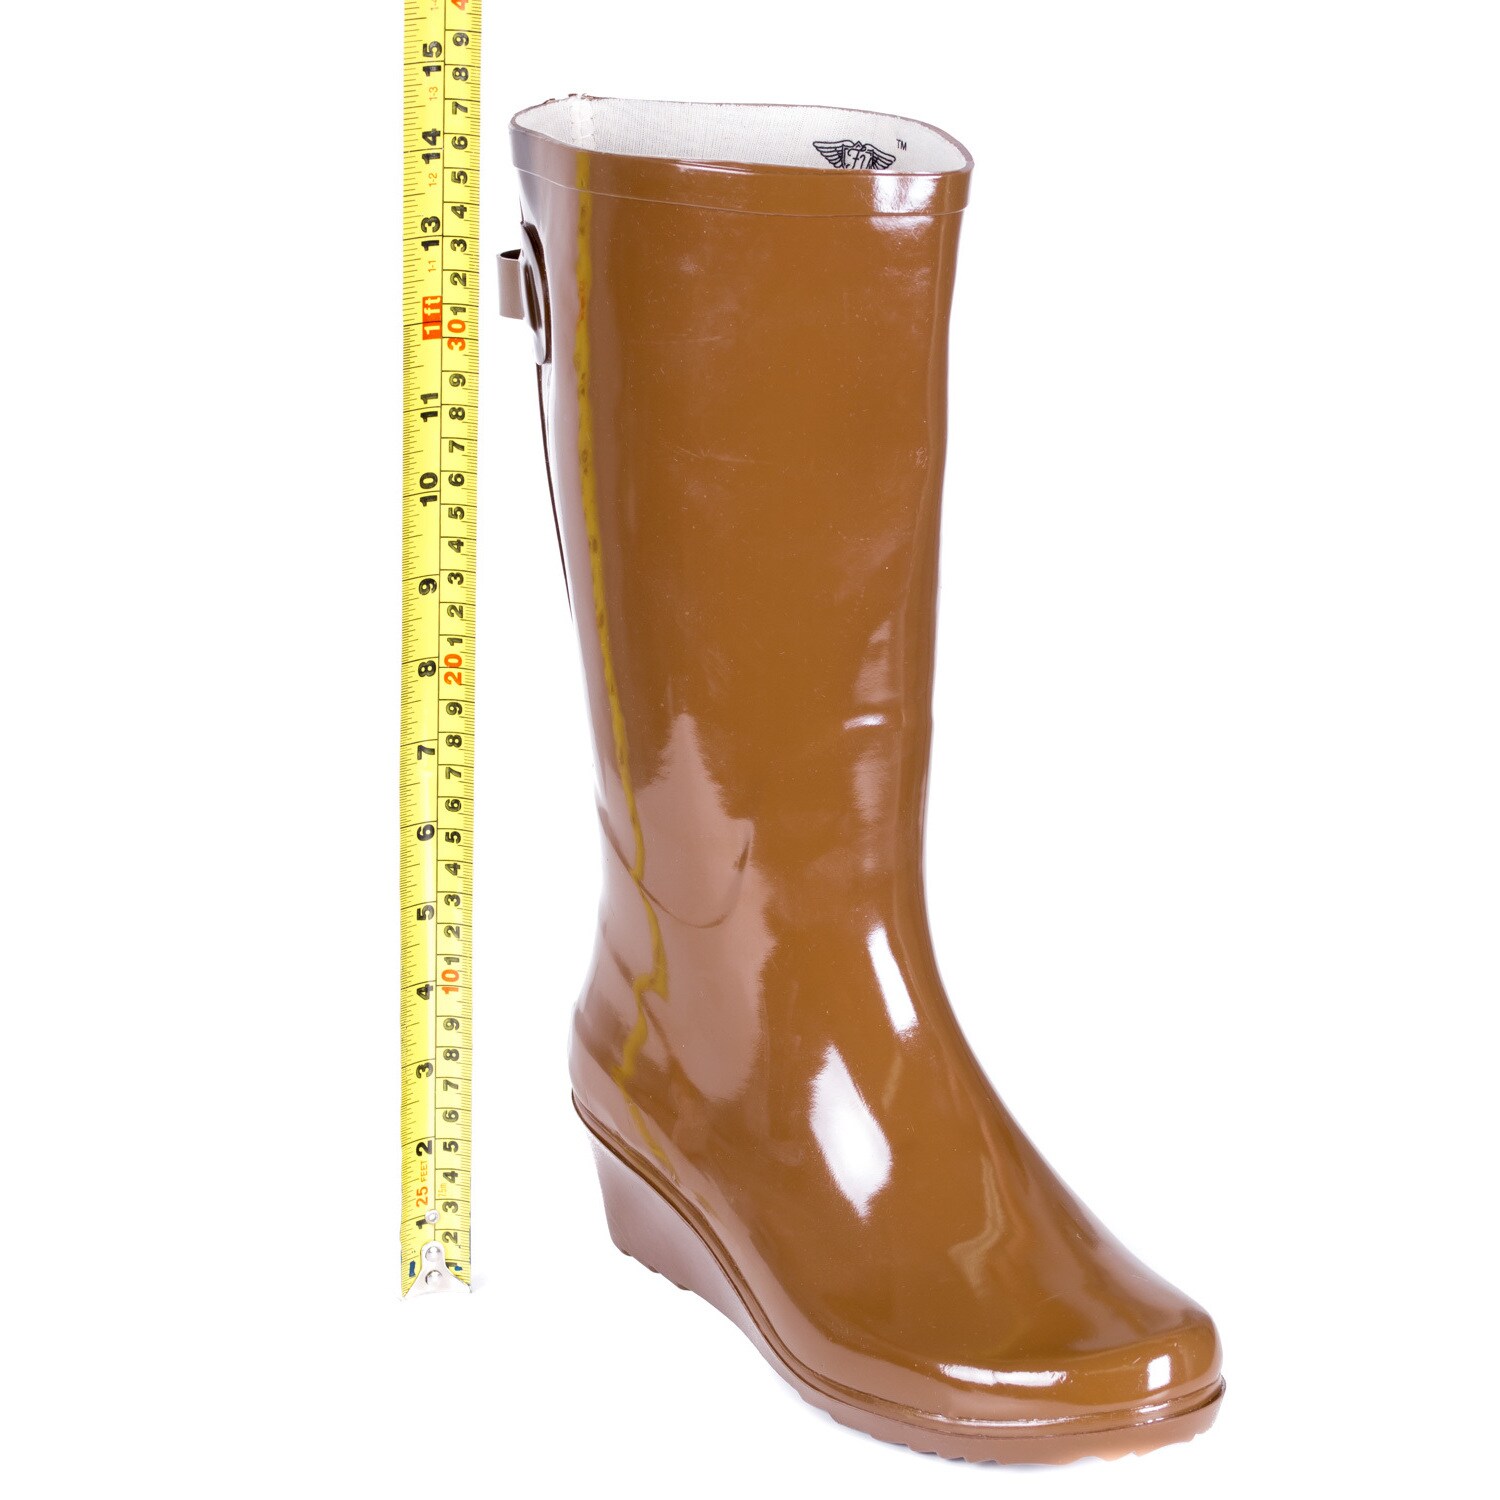 wedge heel rain boots